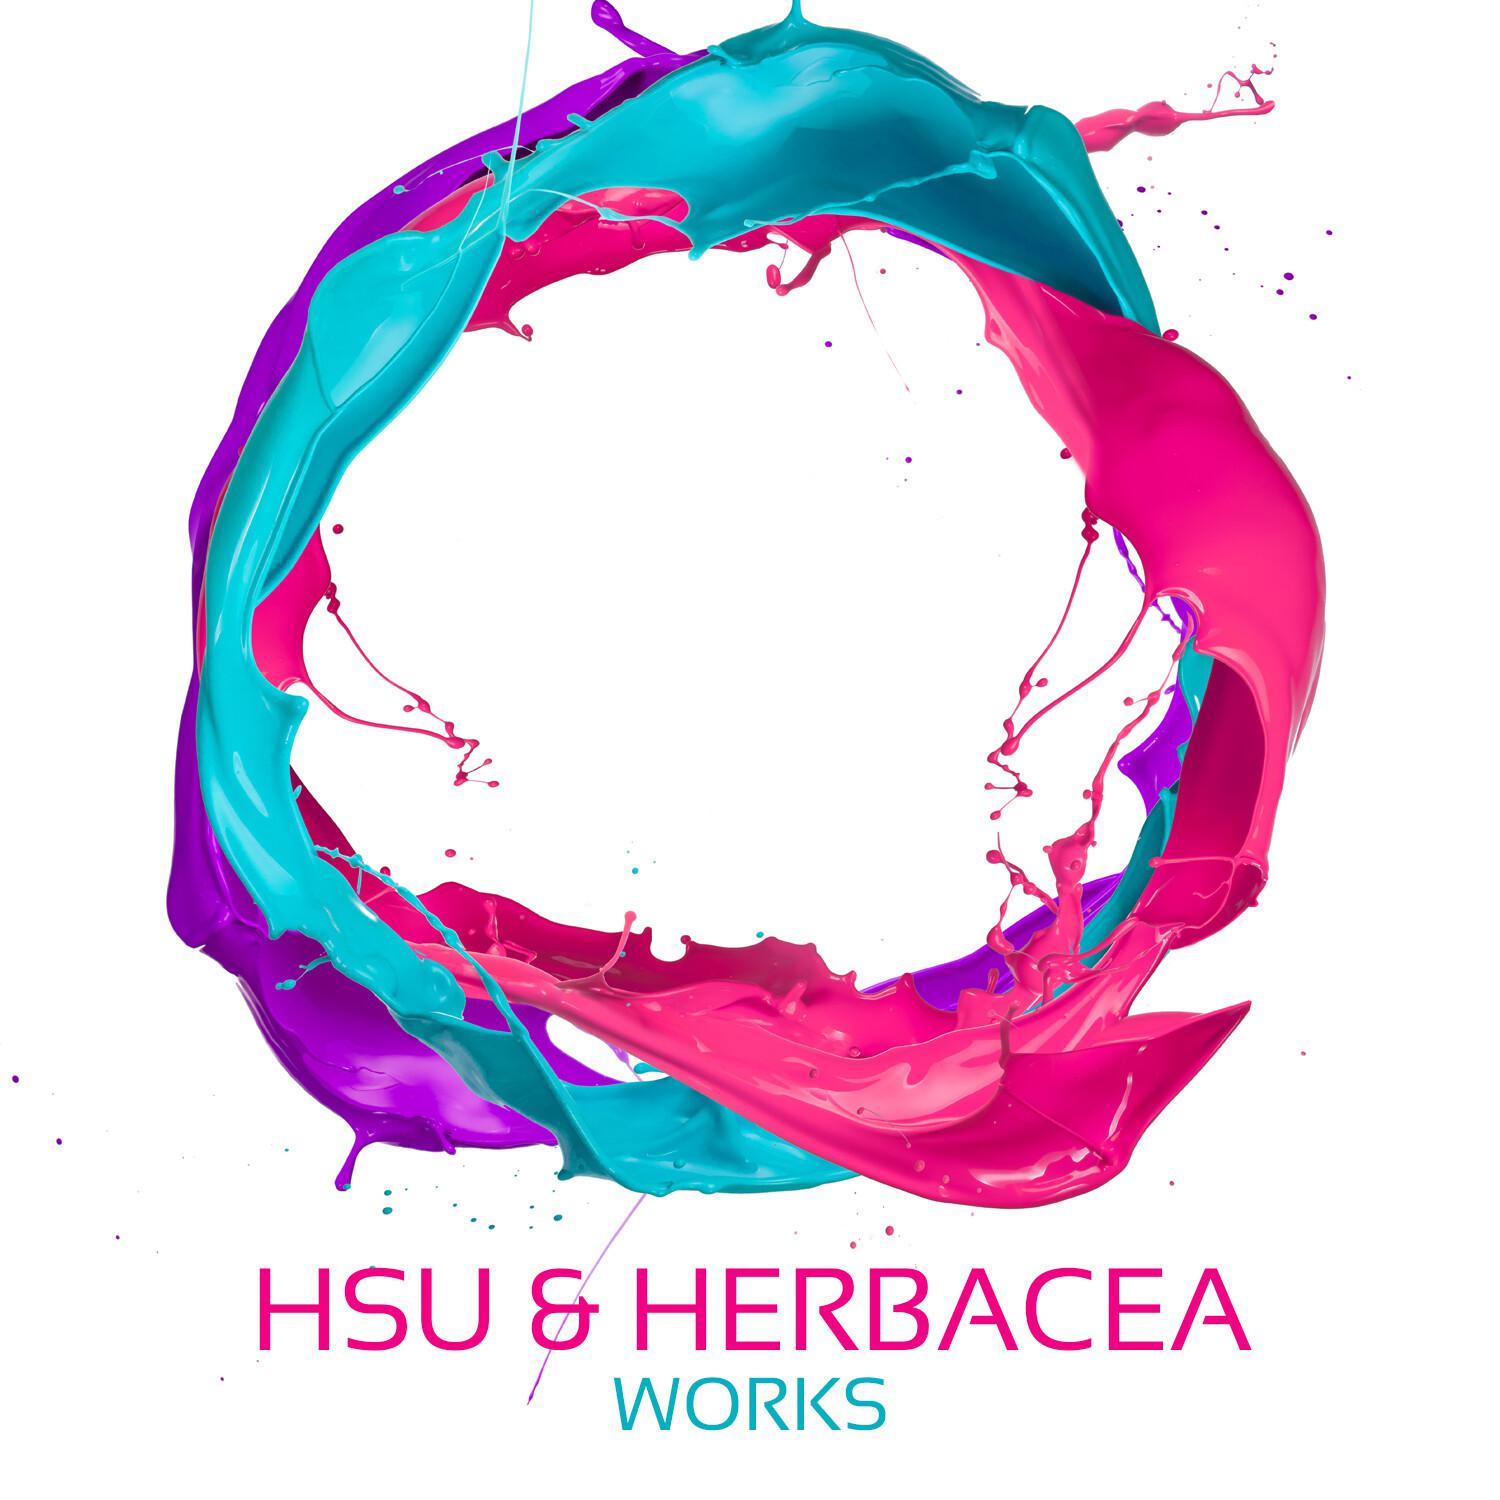 Hsu & Herbacea Works